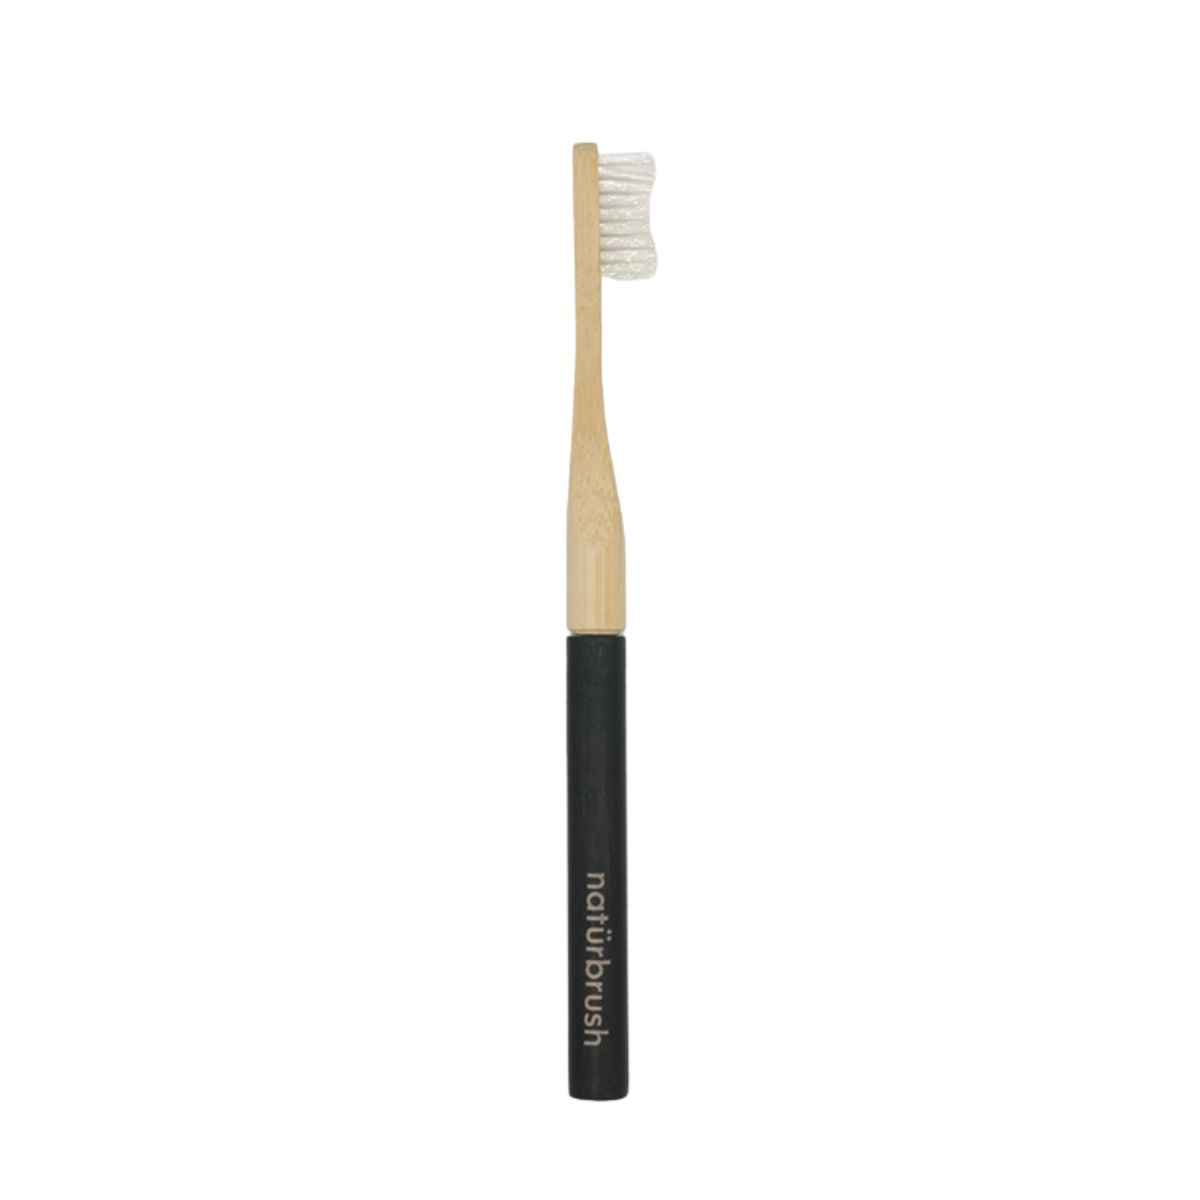 Cepillo de dientes negro de bambú con cabezal intercambiable ecológico cerrado